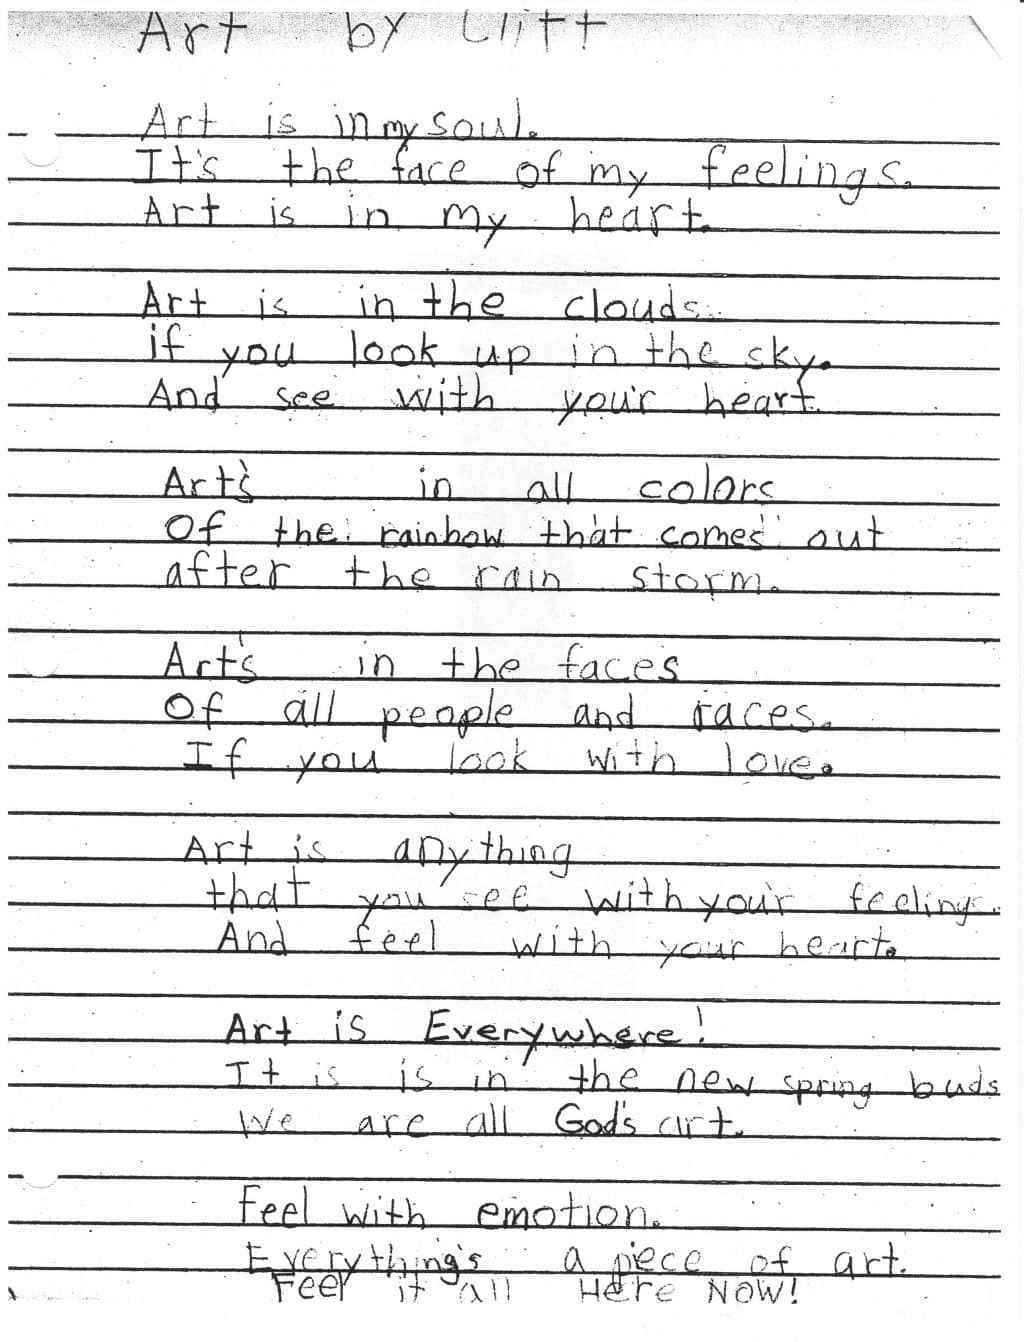 cliffs-poem-handwritten